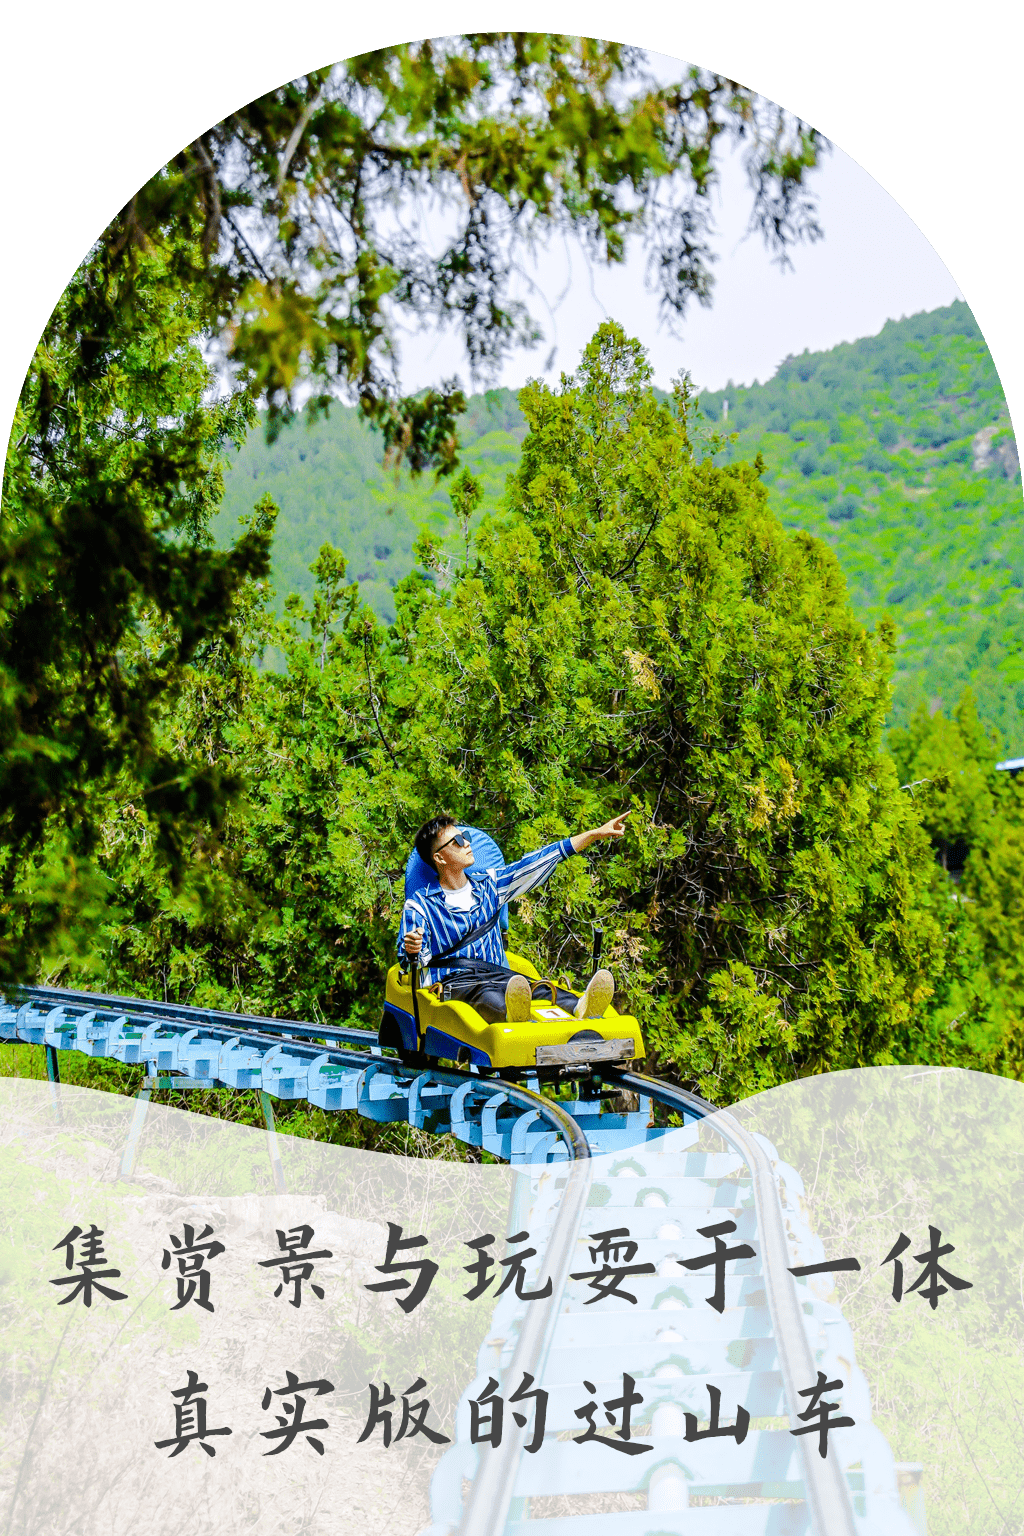 宁波全新炫酷山地滑车，从山顶一口气滑到山脚，惊险刺激第一次见_半边山_车子_旅游